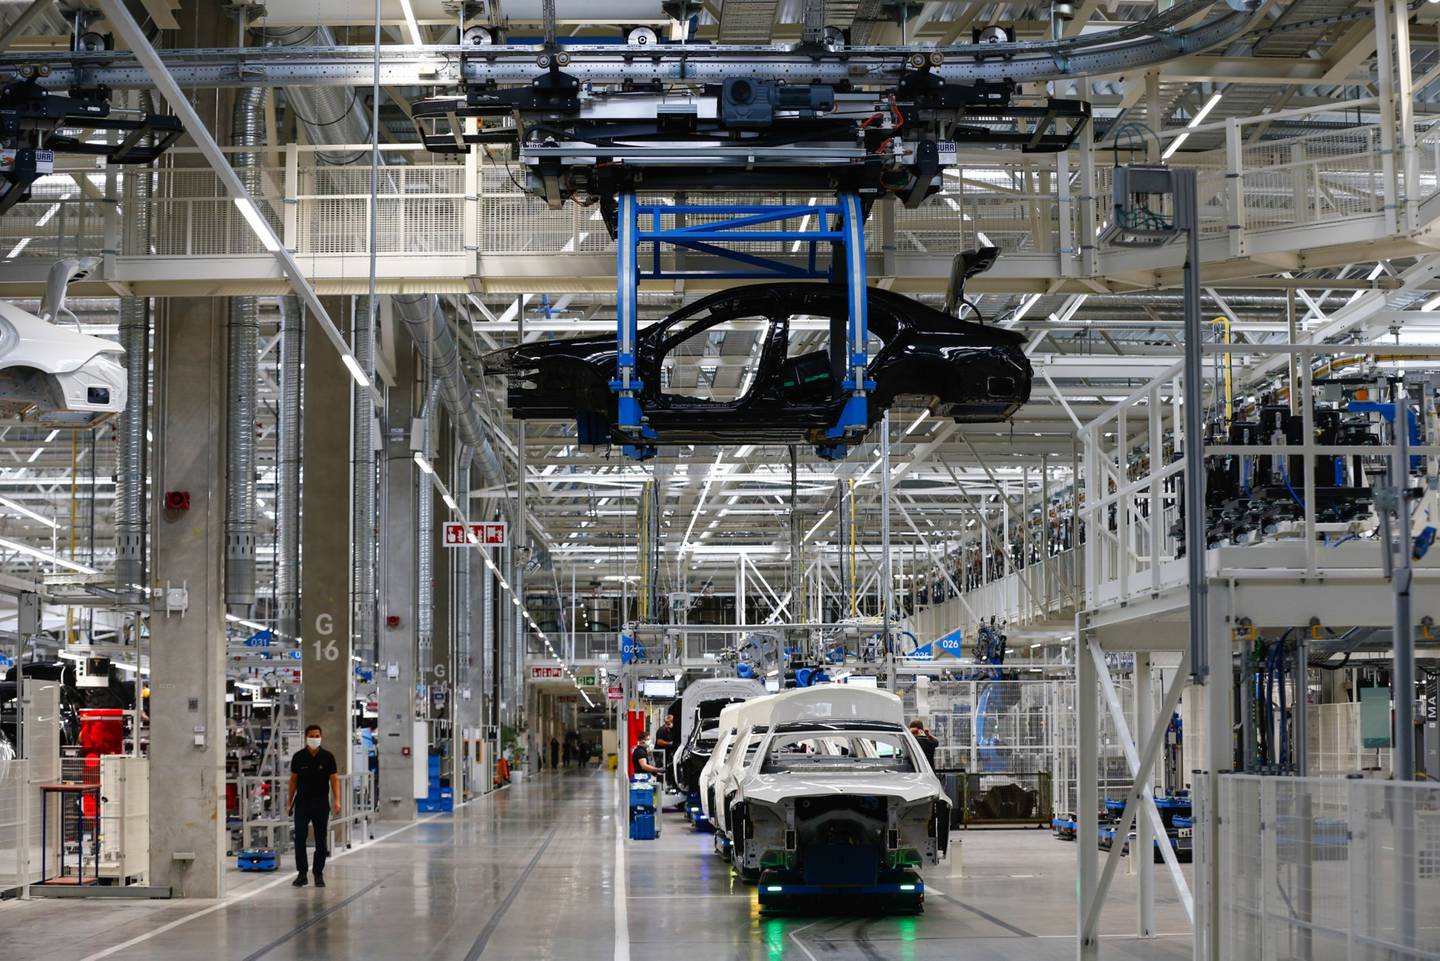 Las carrocerías de lujo de la Clase S se desplazan sobre plataformas robóticas autónomas en la fábrica de Mercedes-Benz AG en Sindelfingen, Alemania.